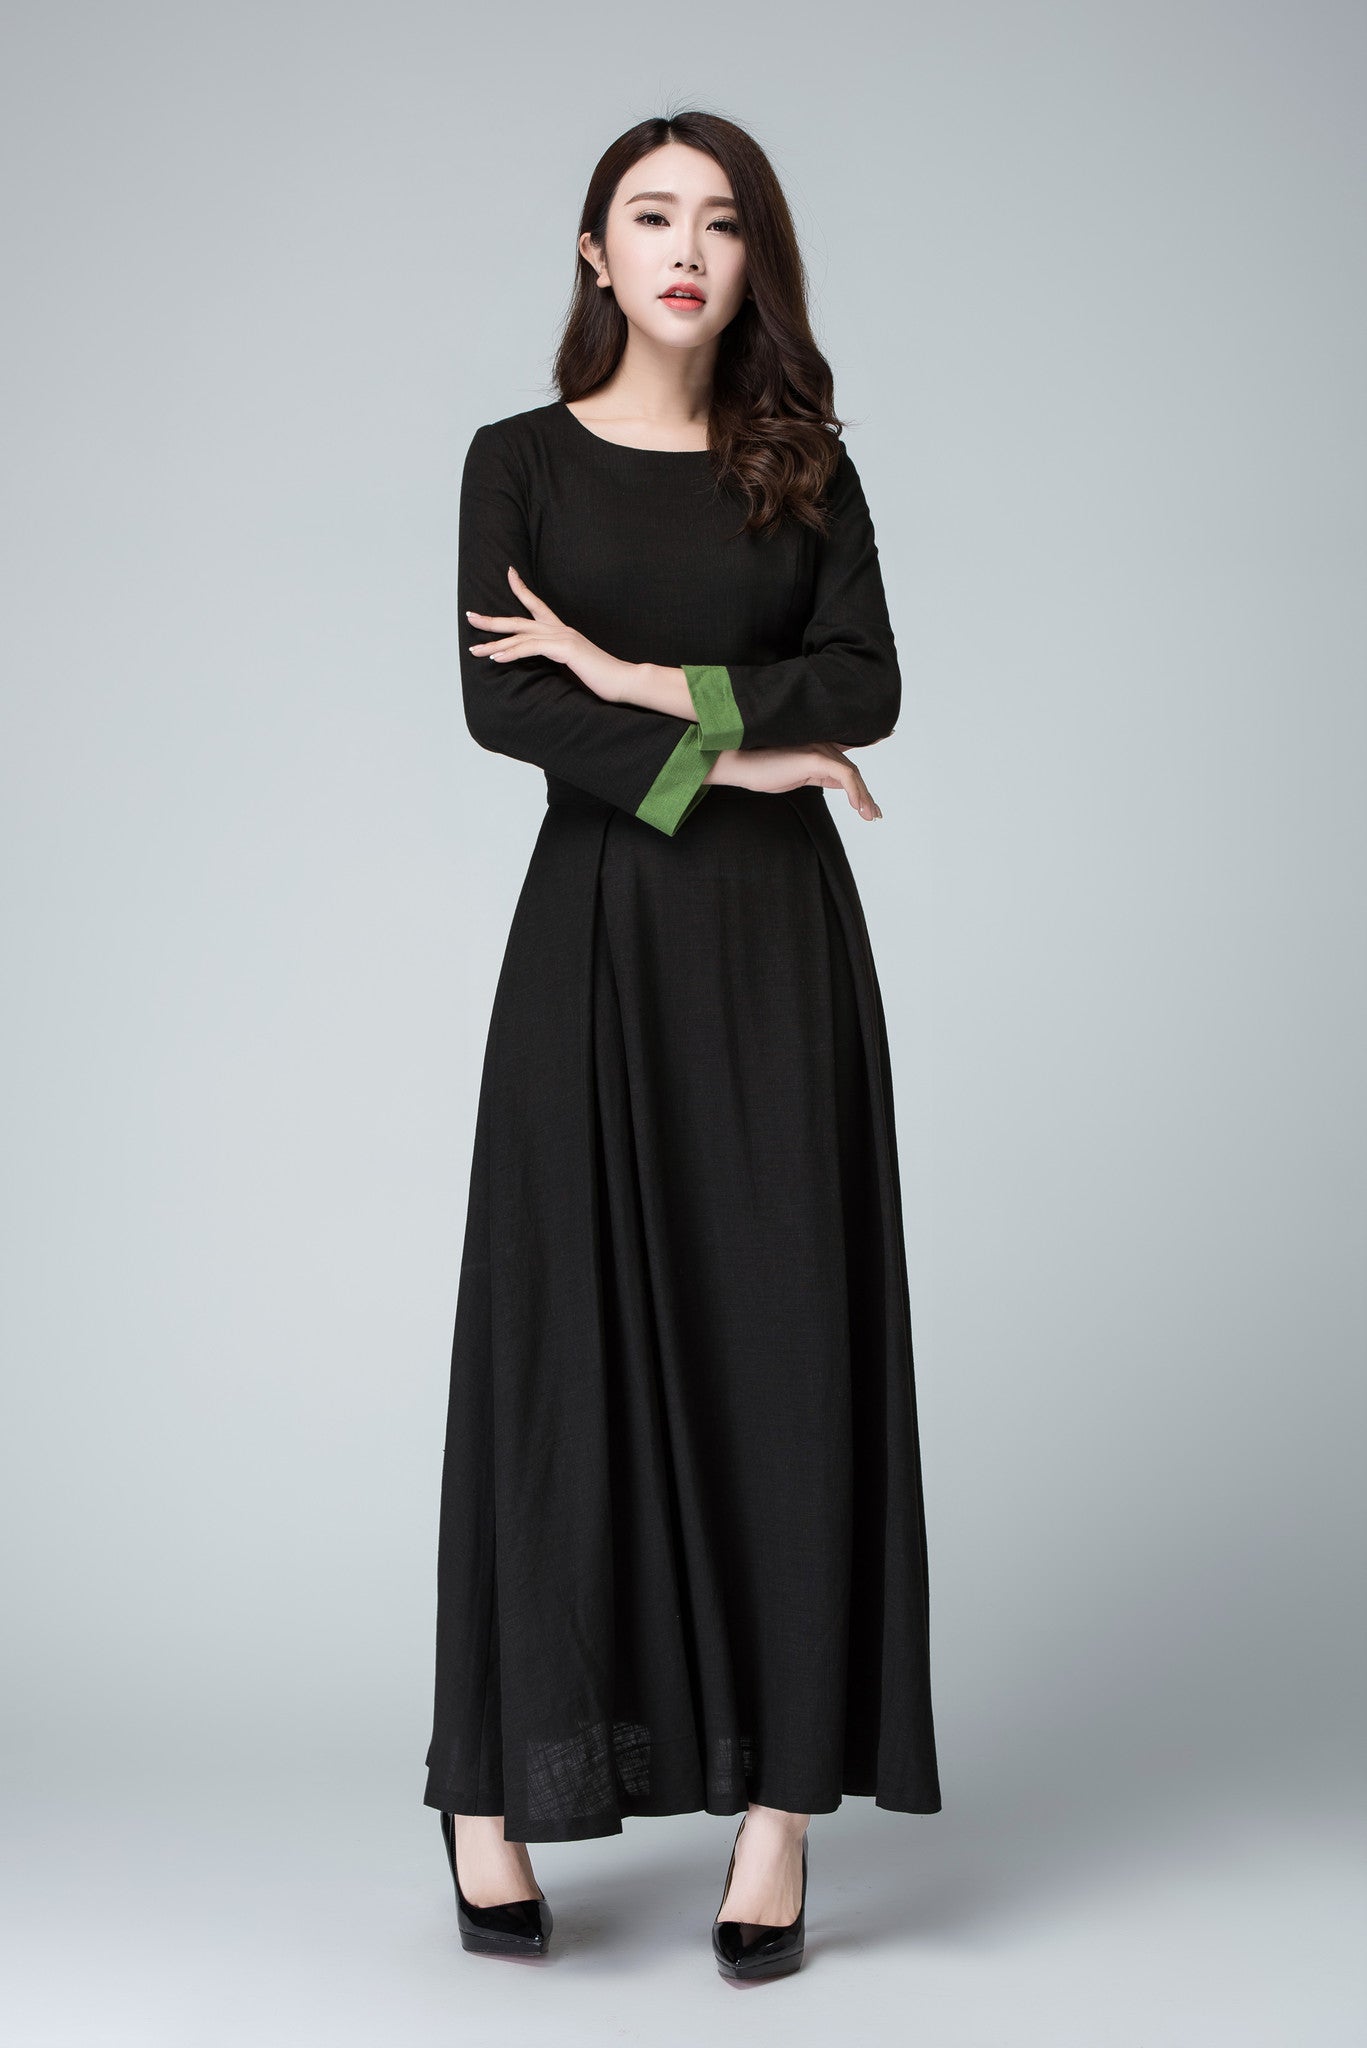 Black dress linen dress maxi dress women dress 1450#